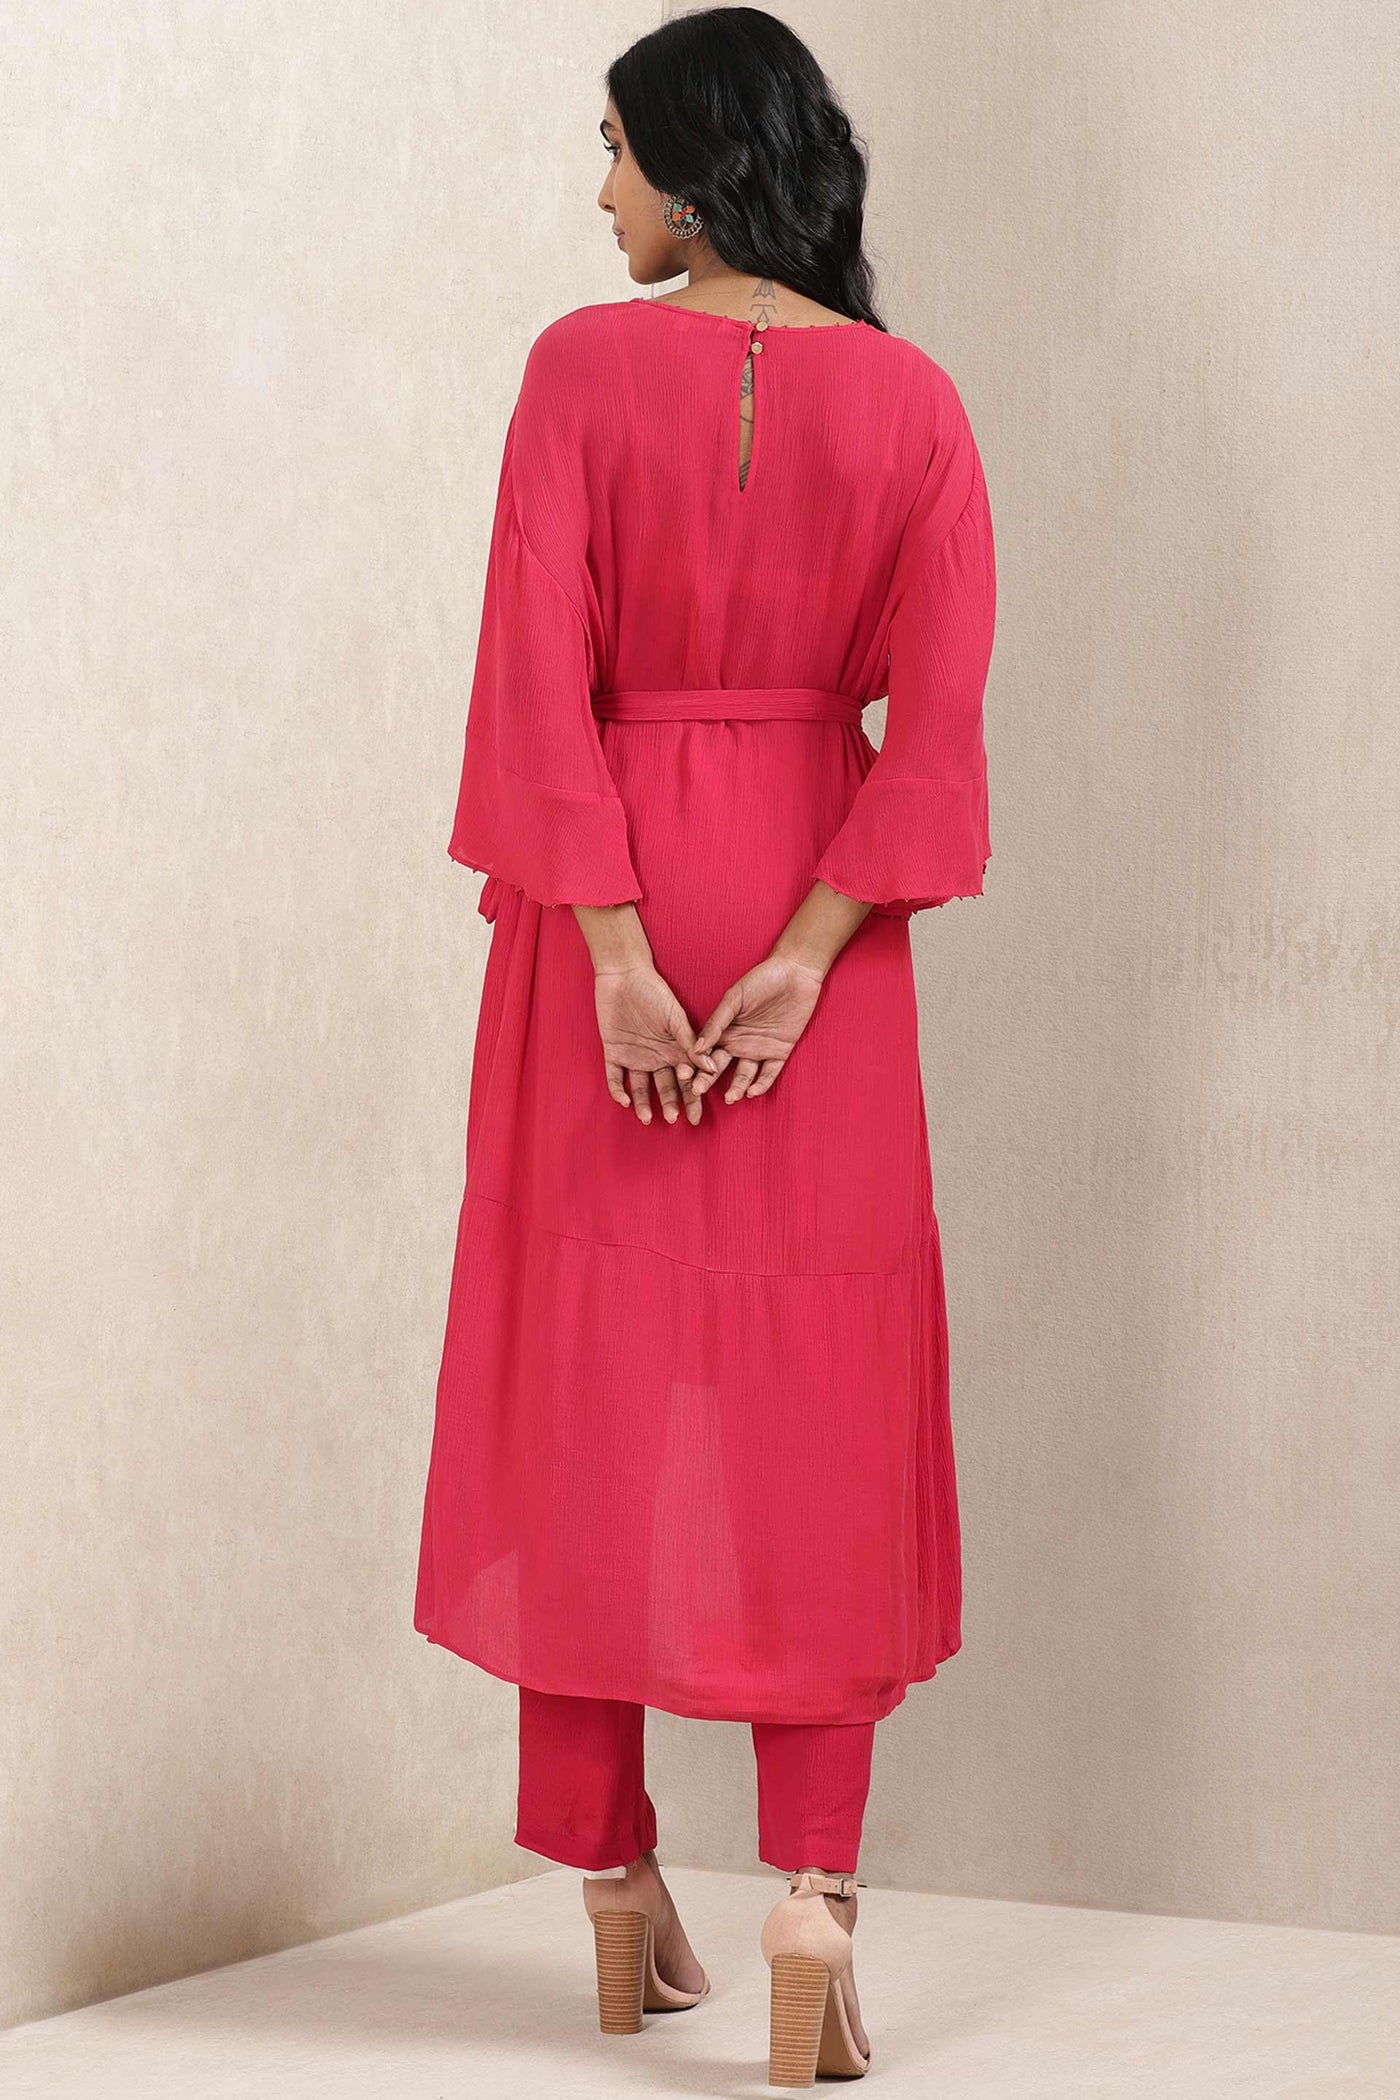 ritu kumar Red Satin Kurta With Pant online shopping melange singapore indian designer wear